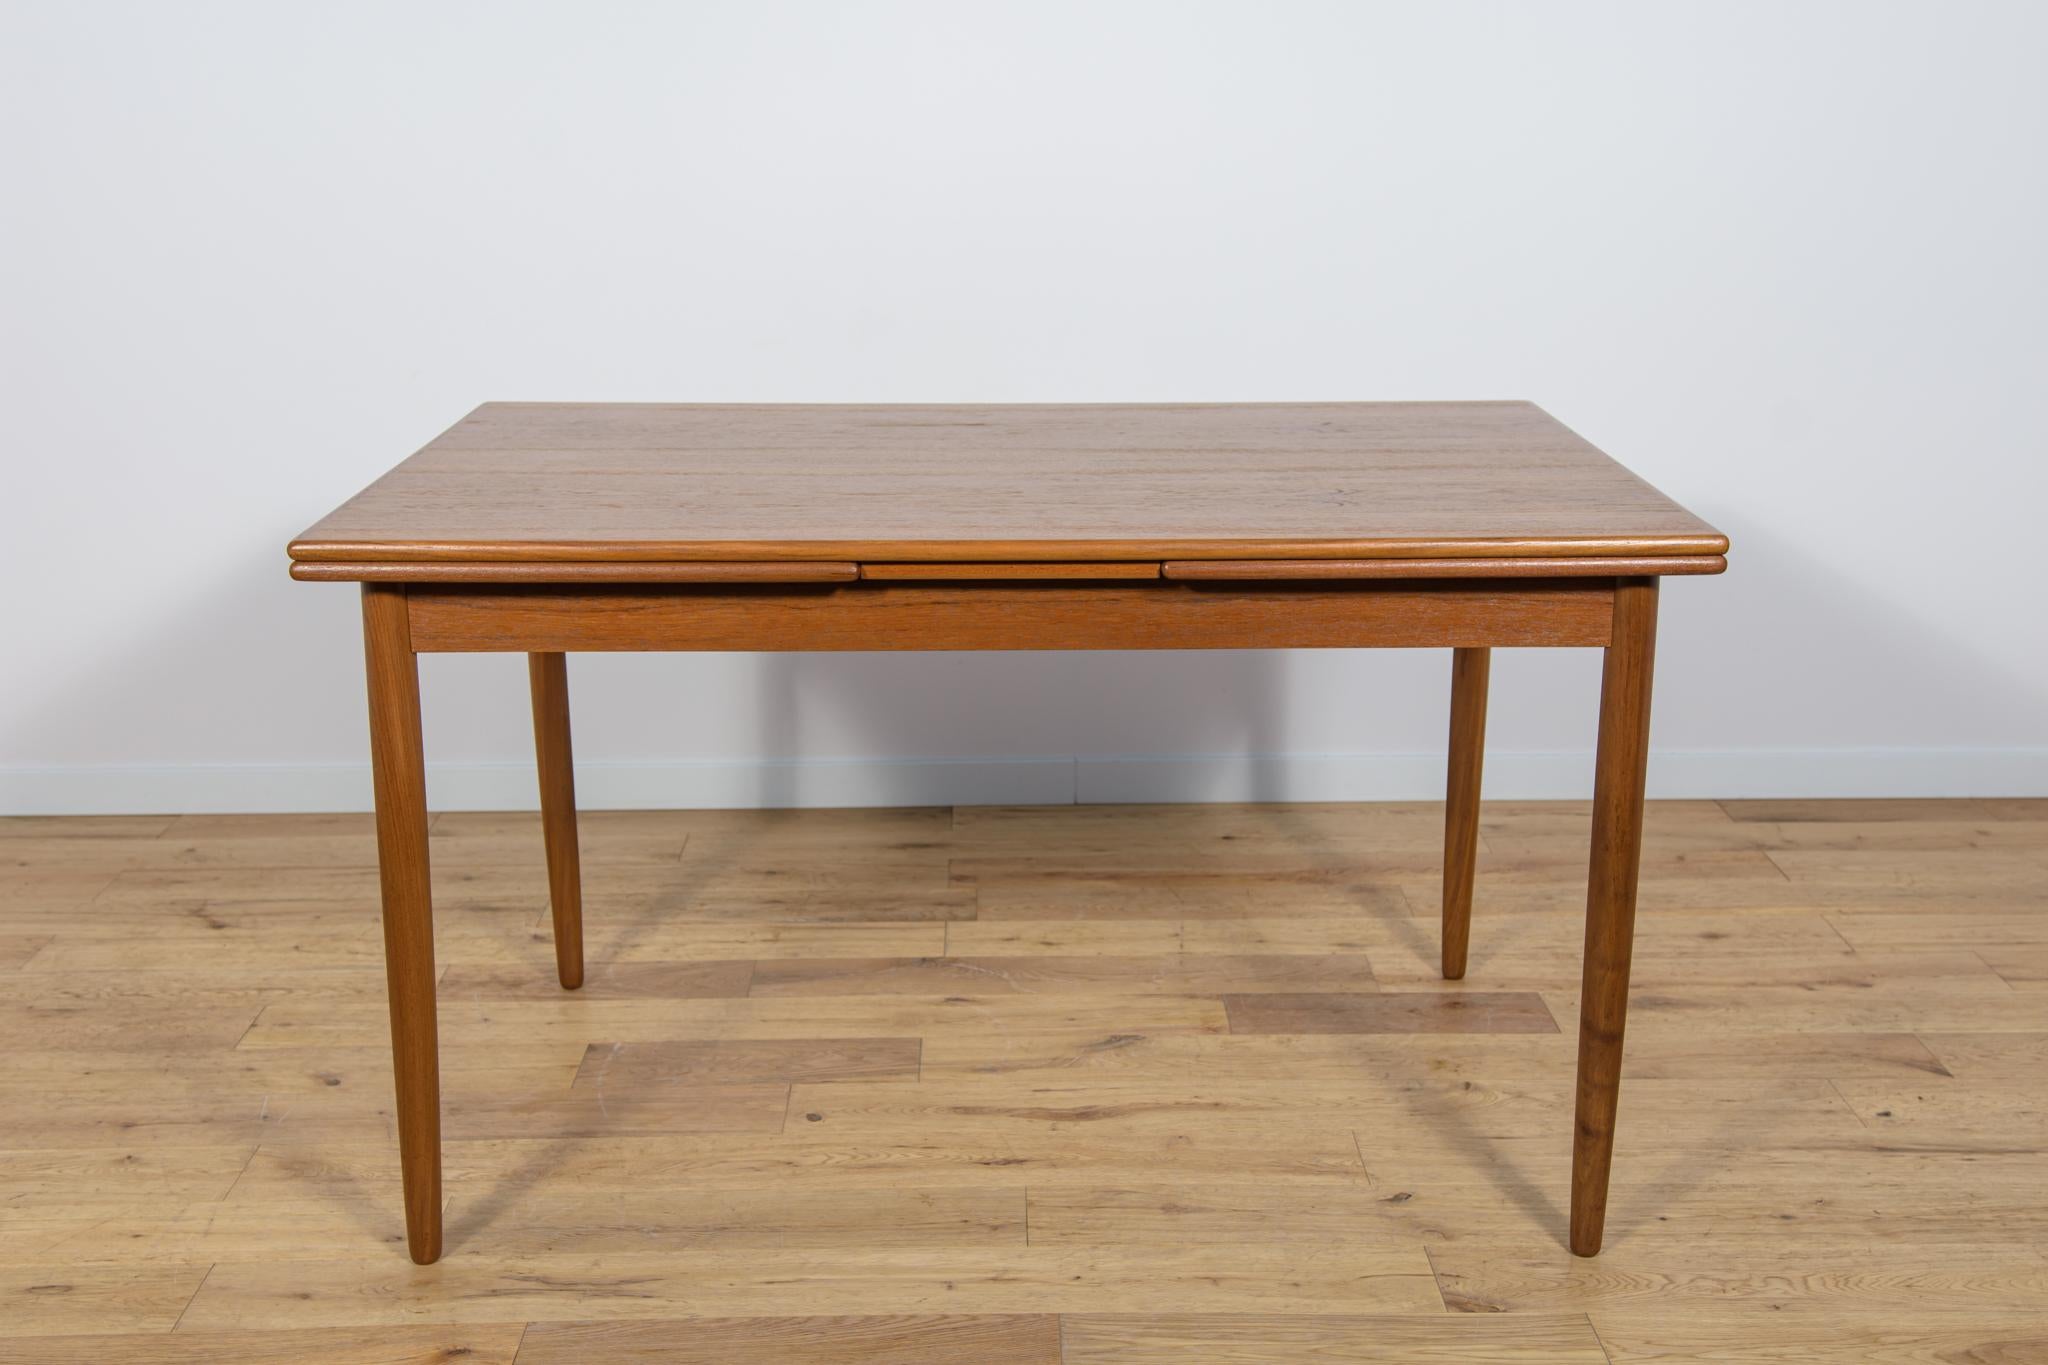 Dieser ausziehbare Mid-Century-Esstisch aus Teakholz wurde in den 1960er Jahren in Dänemark hergestellt. Der Tisch hat verstärkte, profilierte Kanten, die ihm Eleganz verleihen. Die Teakholz-Elemente wurden von der alten Oberfläche gereinigt und